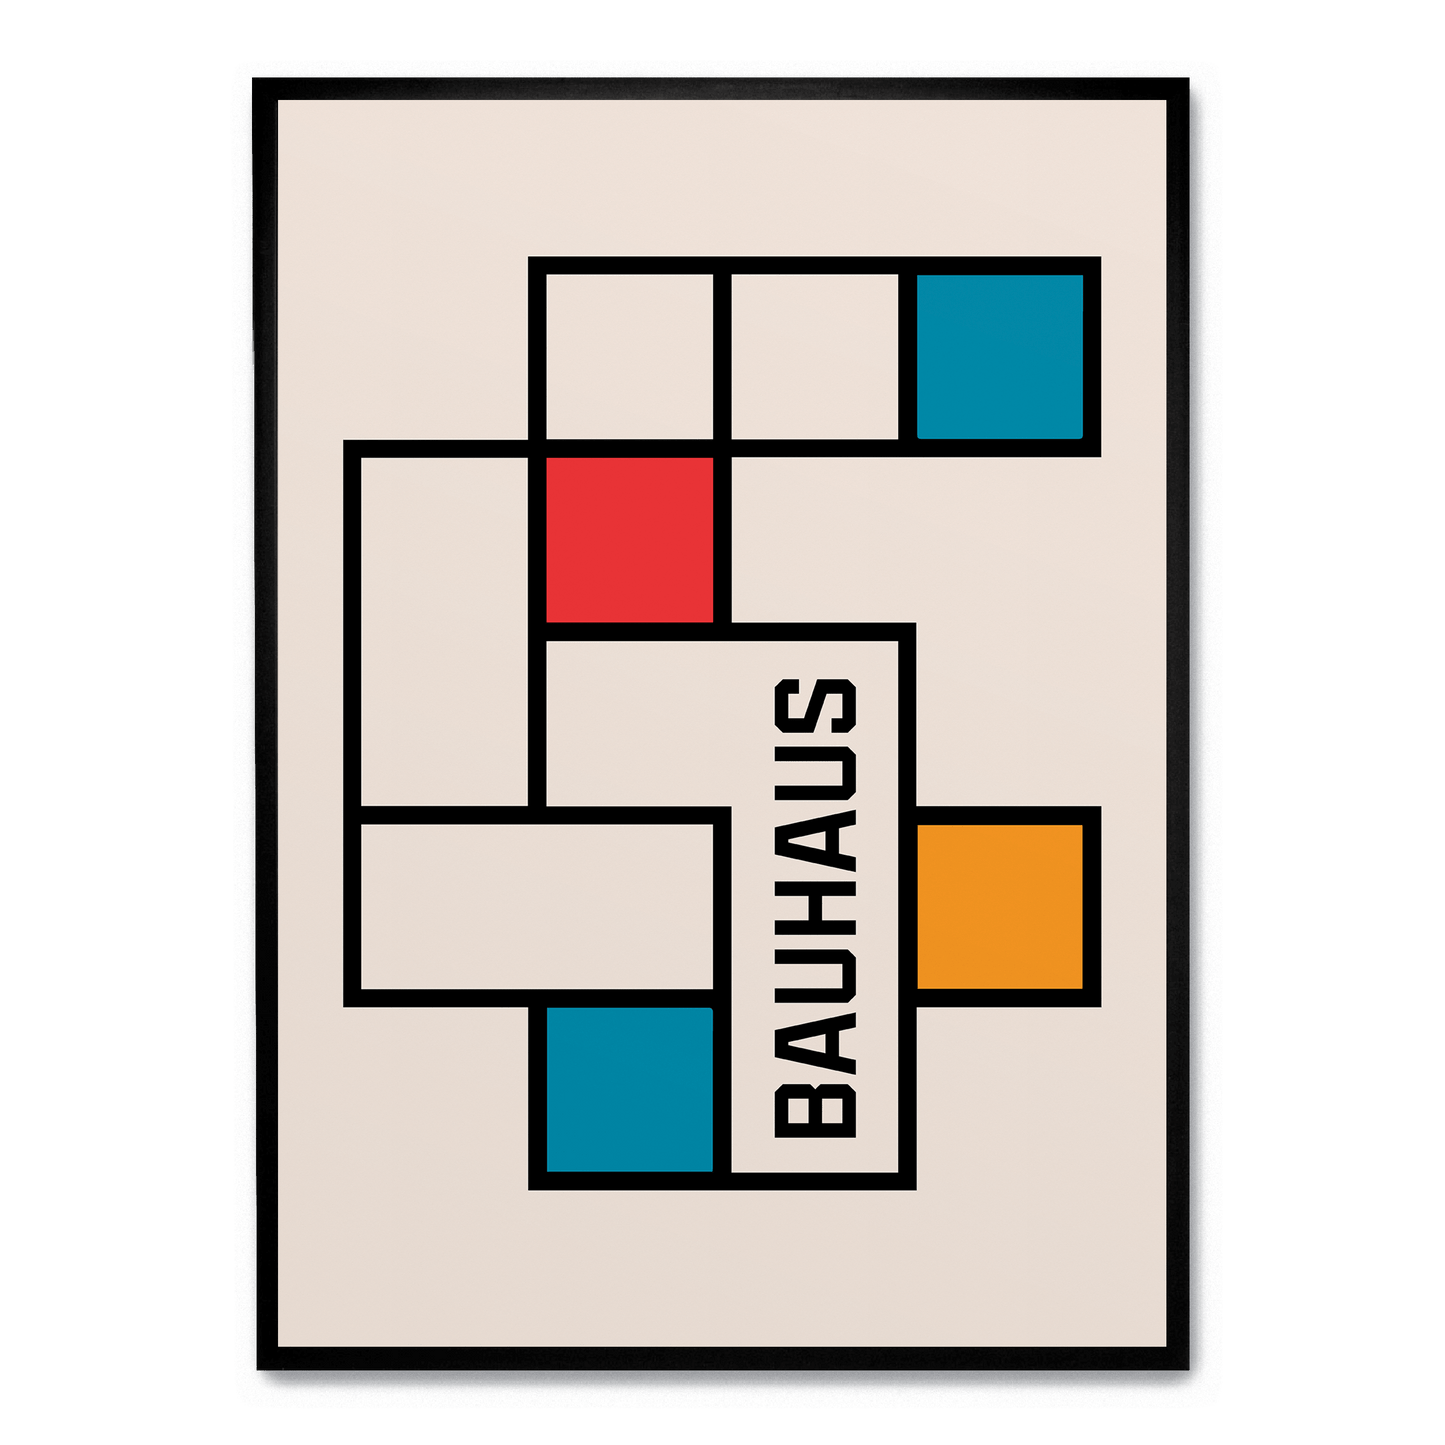 Bauhaus Tetris